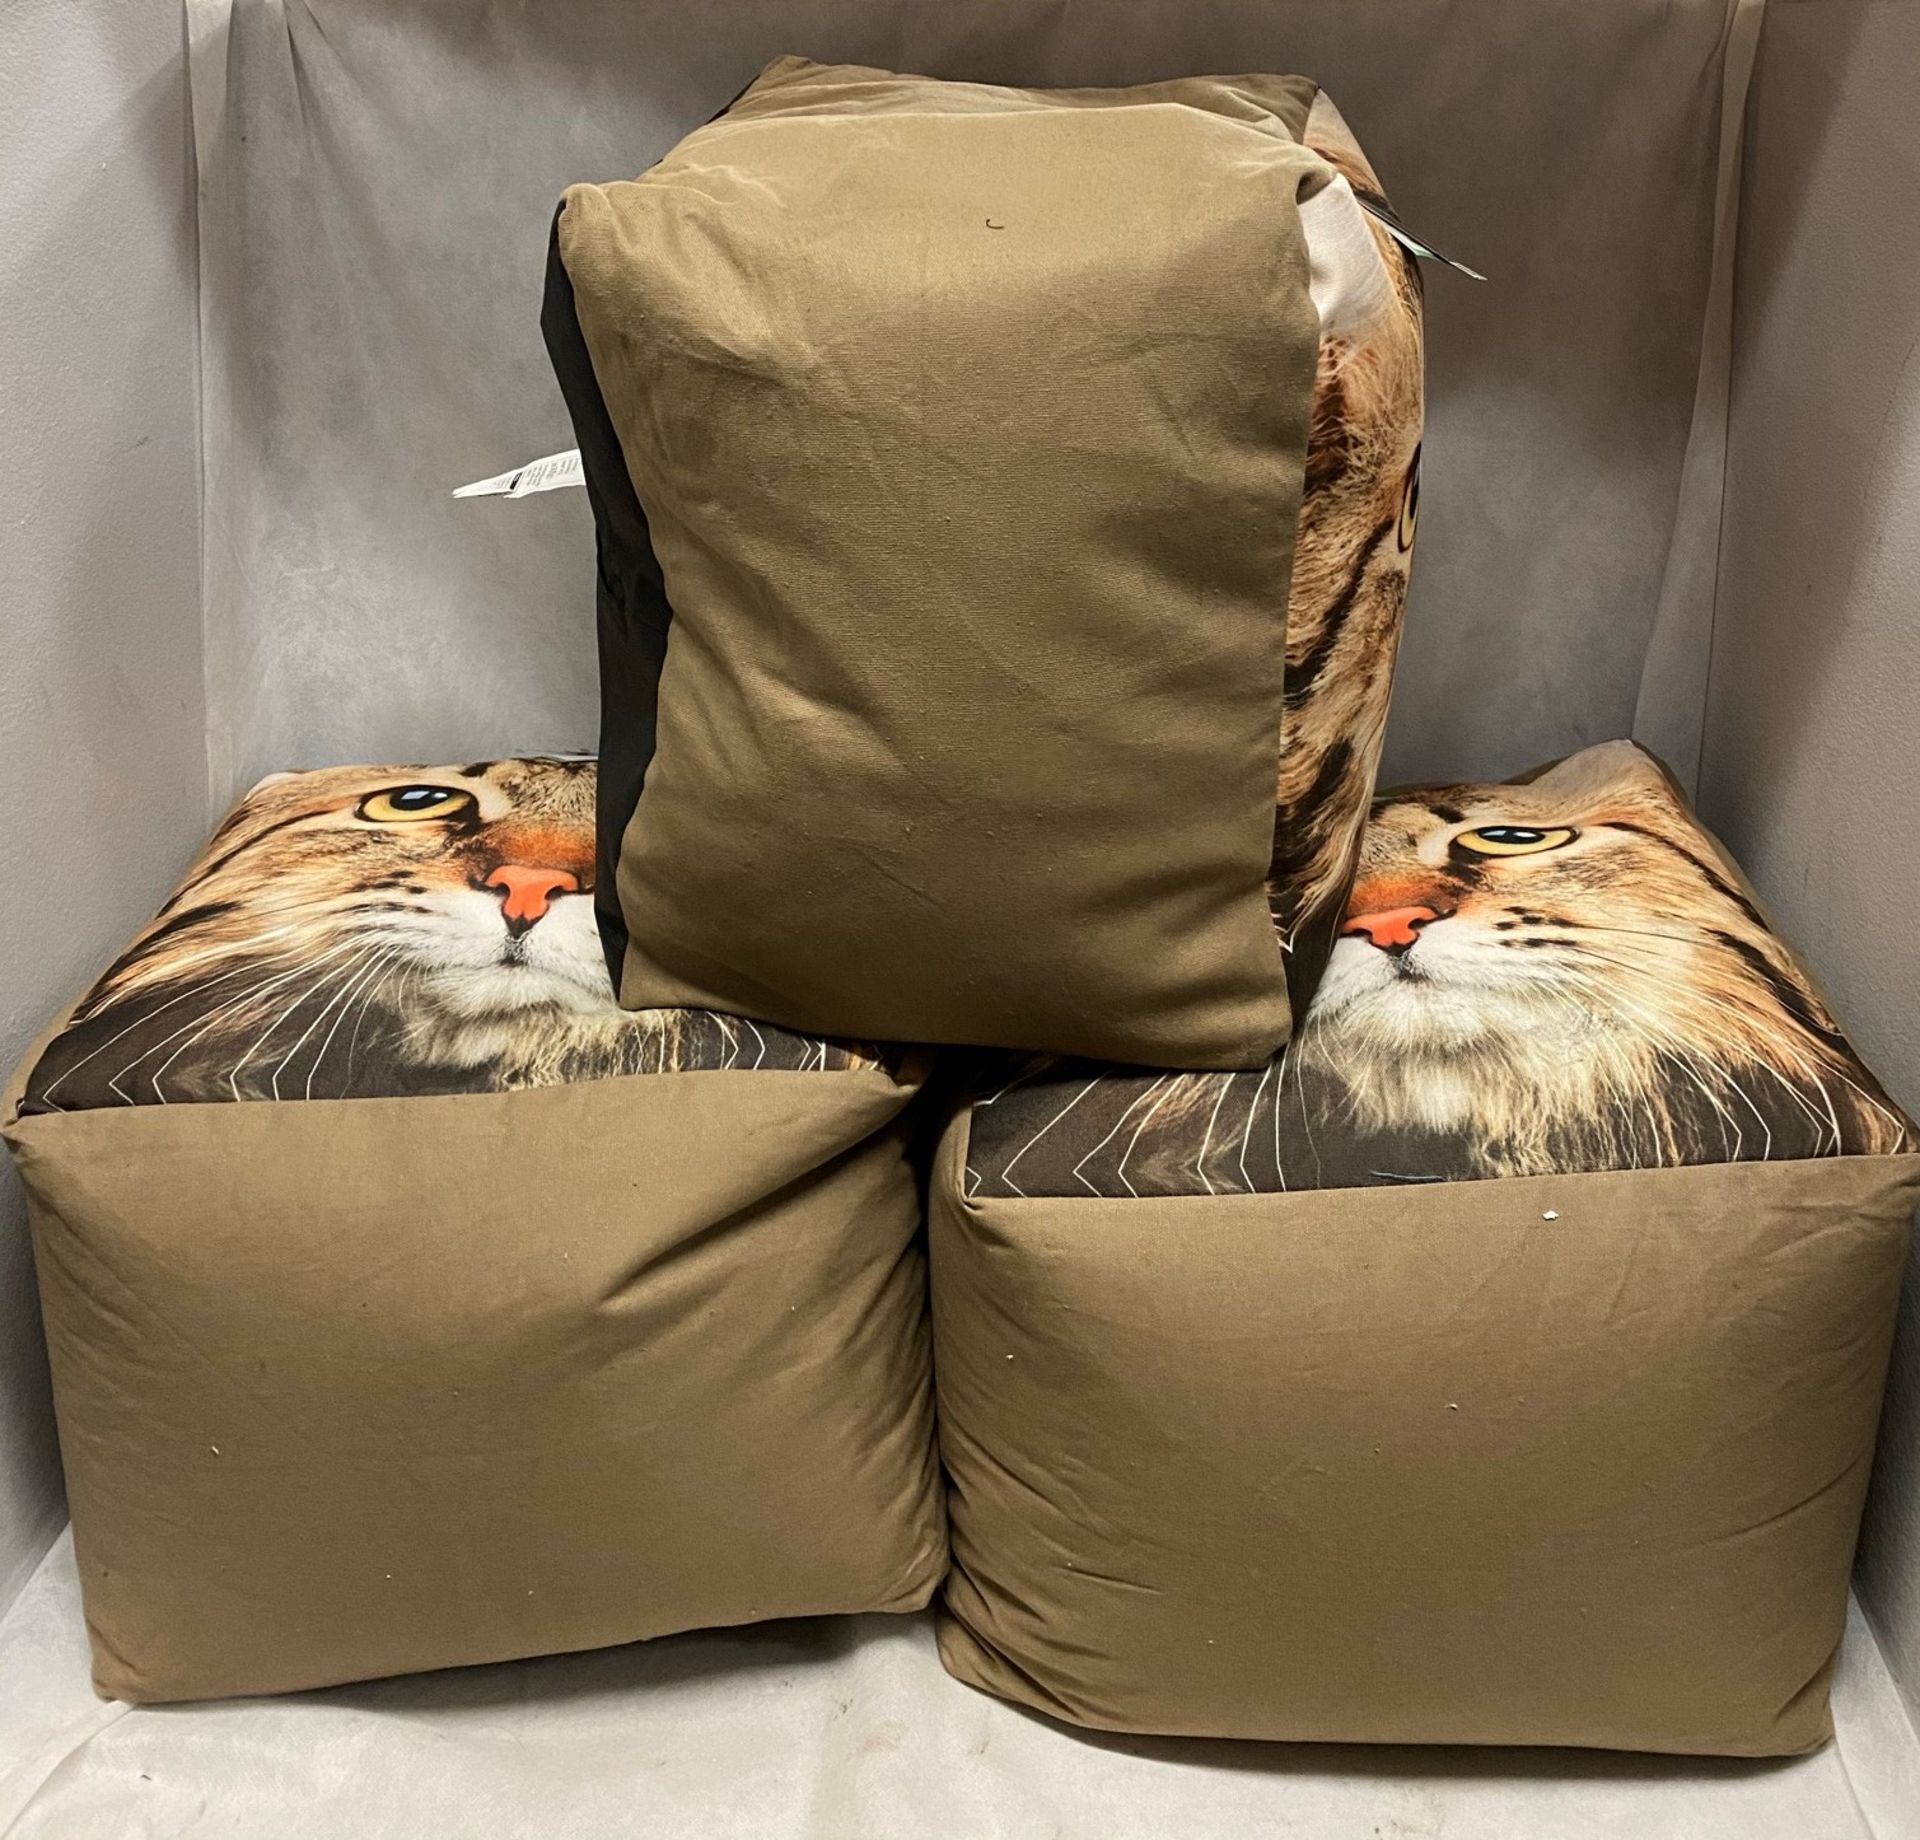 3 x George Home cat print pouffes (40cm x 40cm x 30cm) RRP £15 each - Image 2 of 2